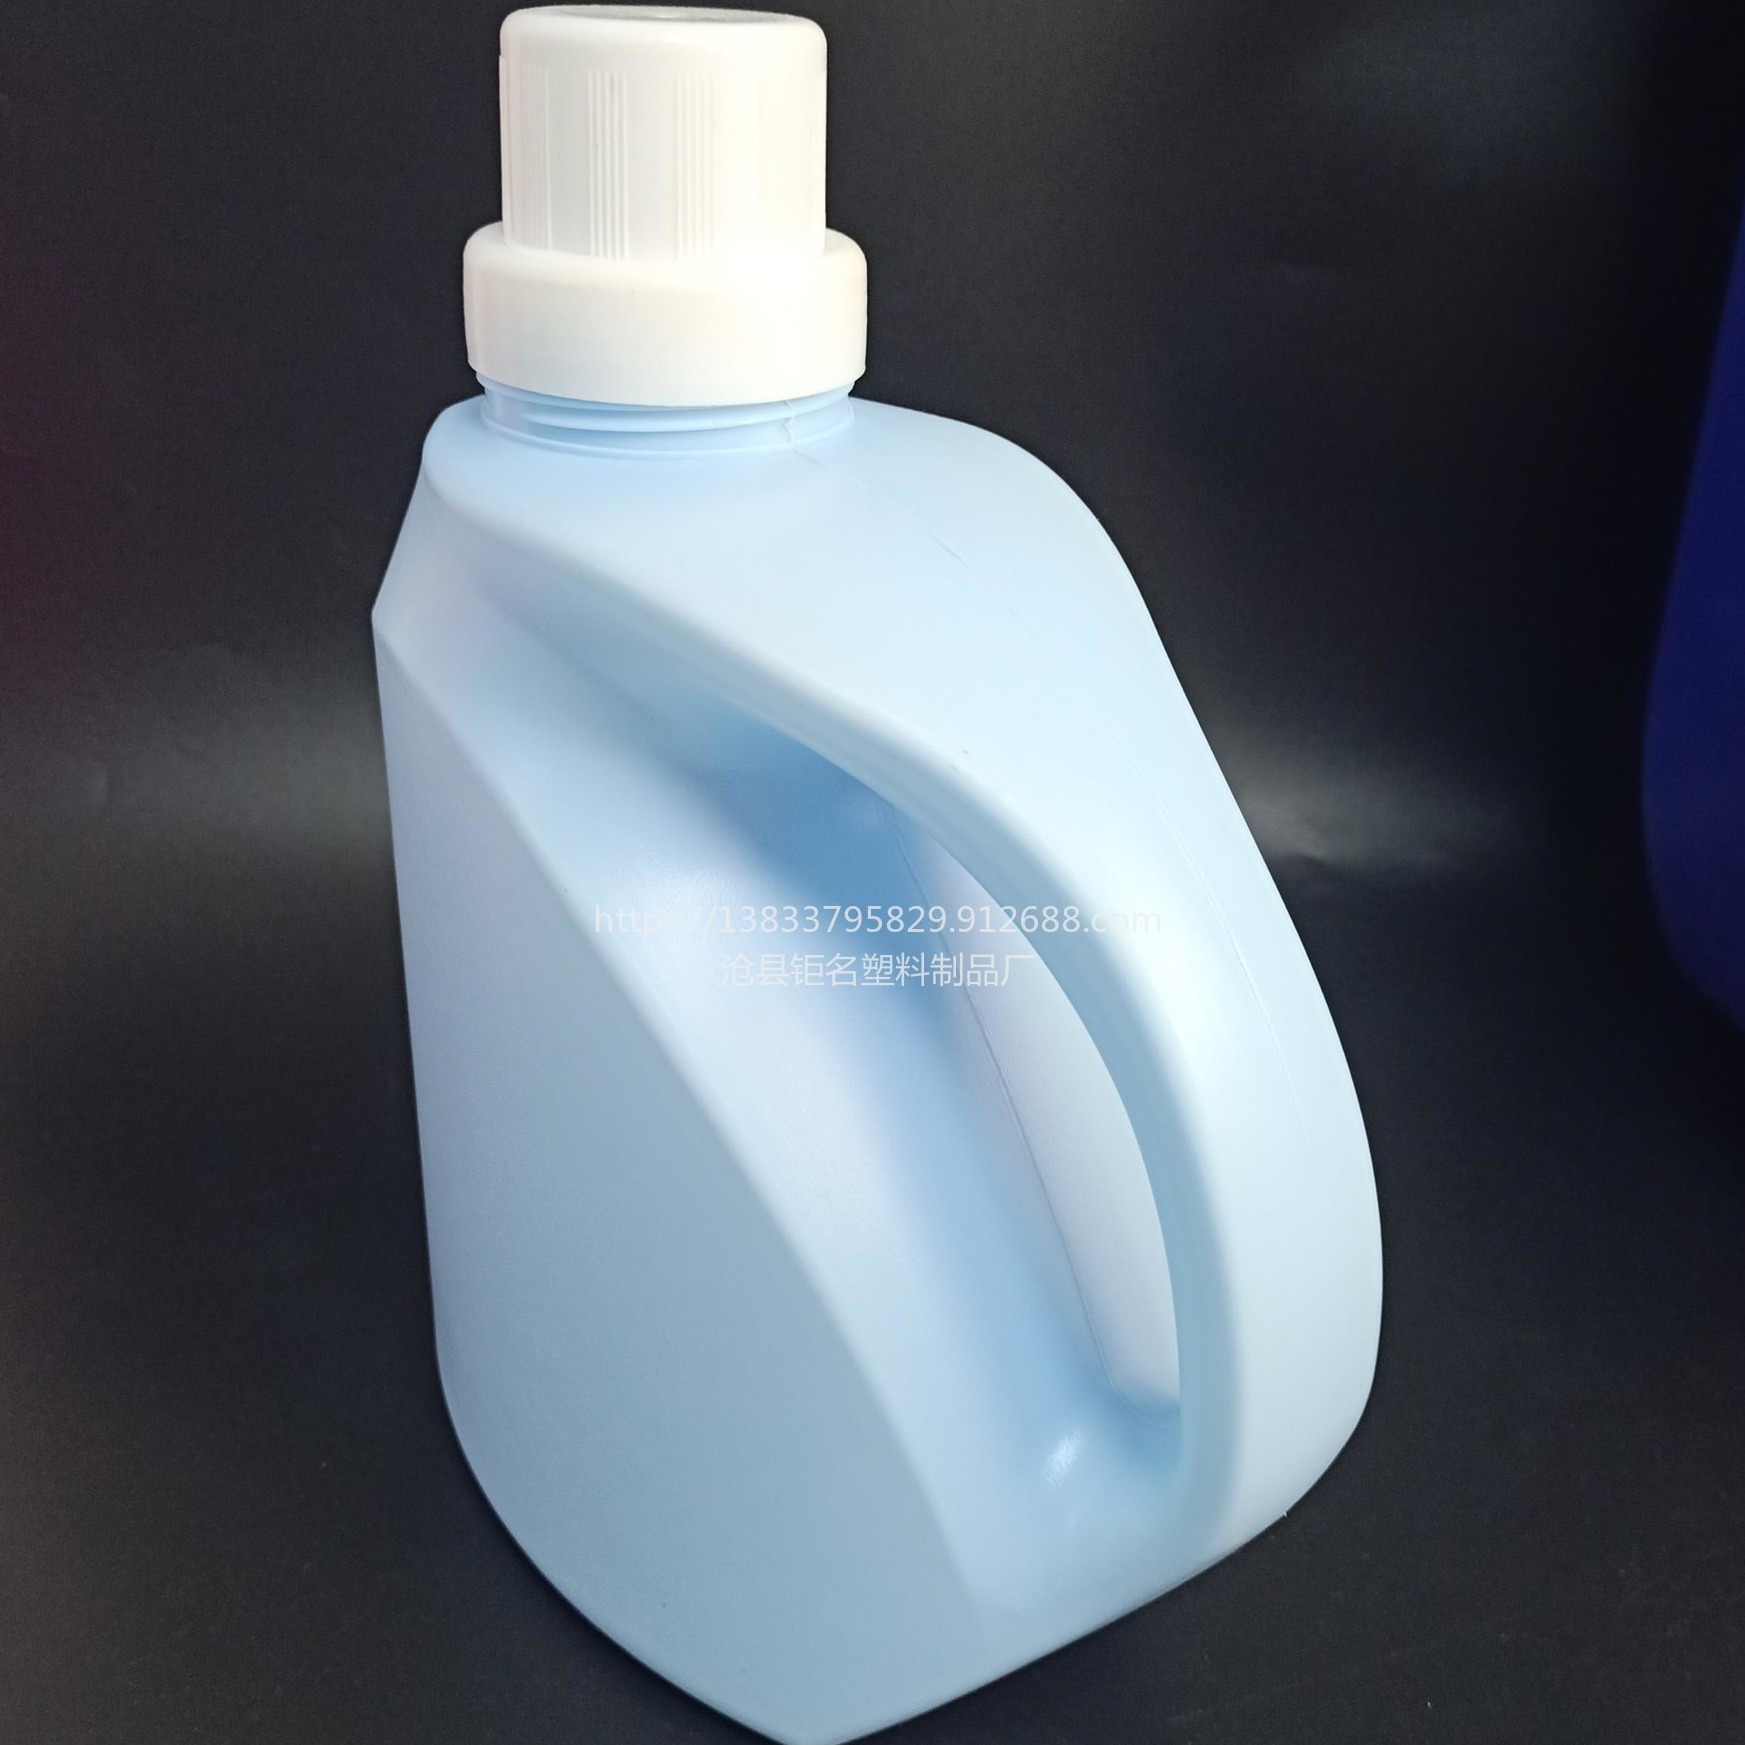 钜名供应 塑料瓶 1L 2L 3L 5L 洗衣液瓶 洗衣液壶 洗洁精瓶 可加工定制 外形设计 开模生产 洗衣液桶